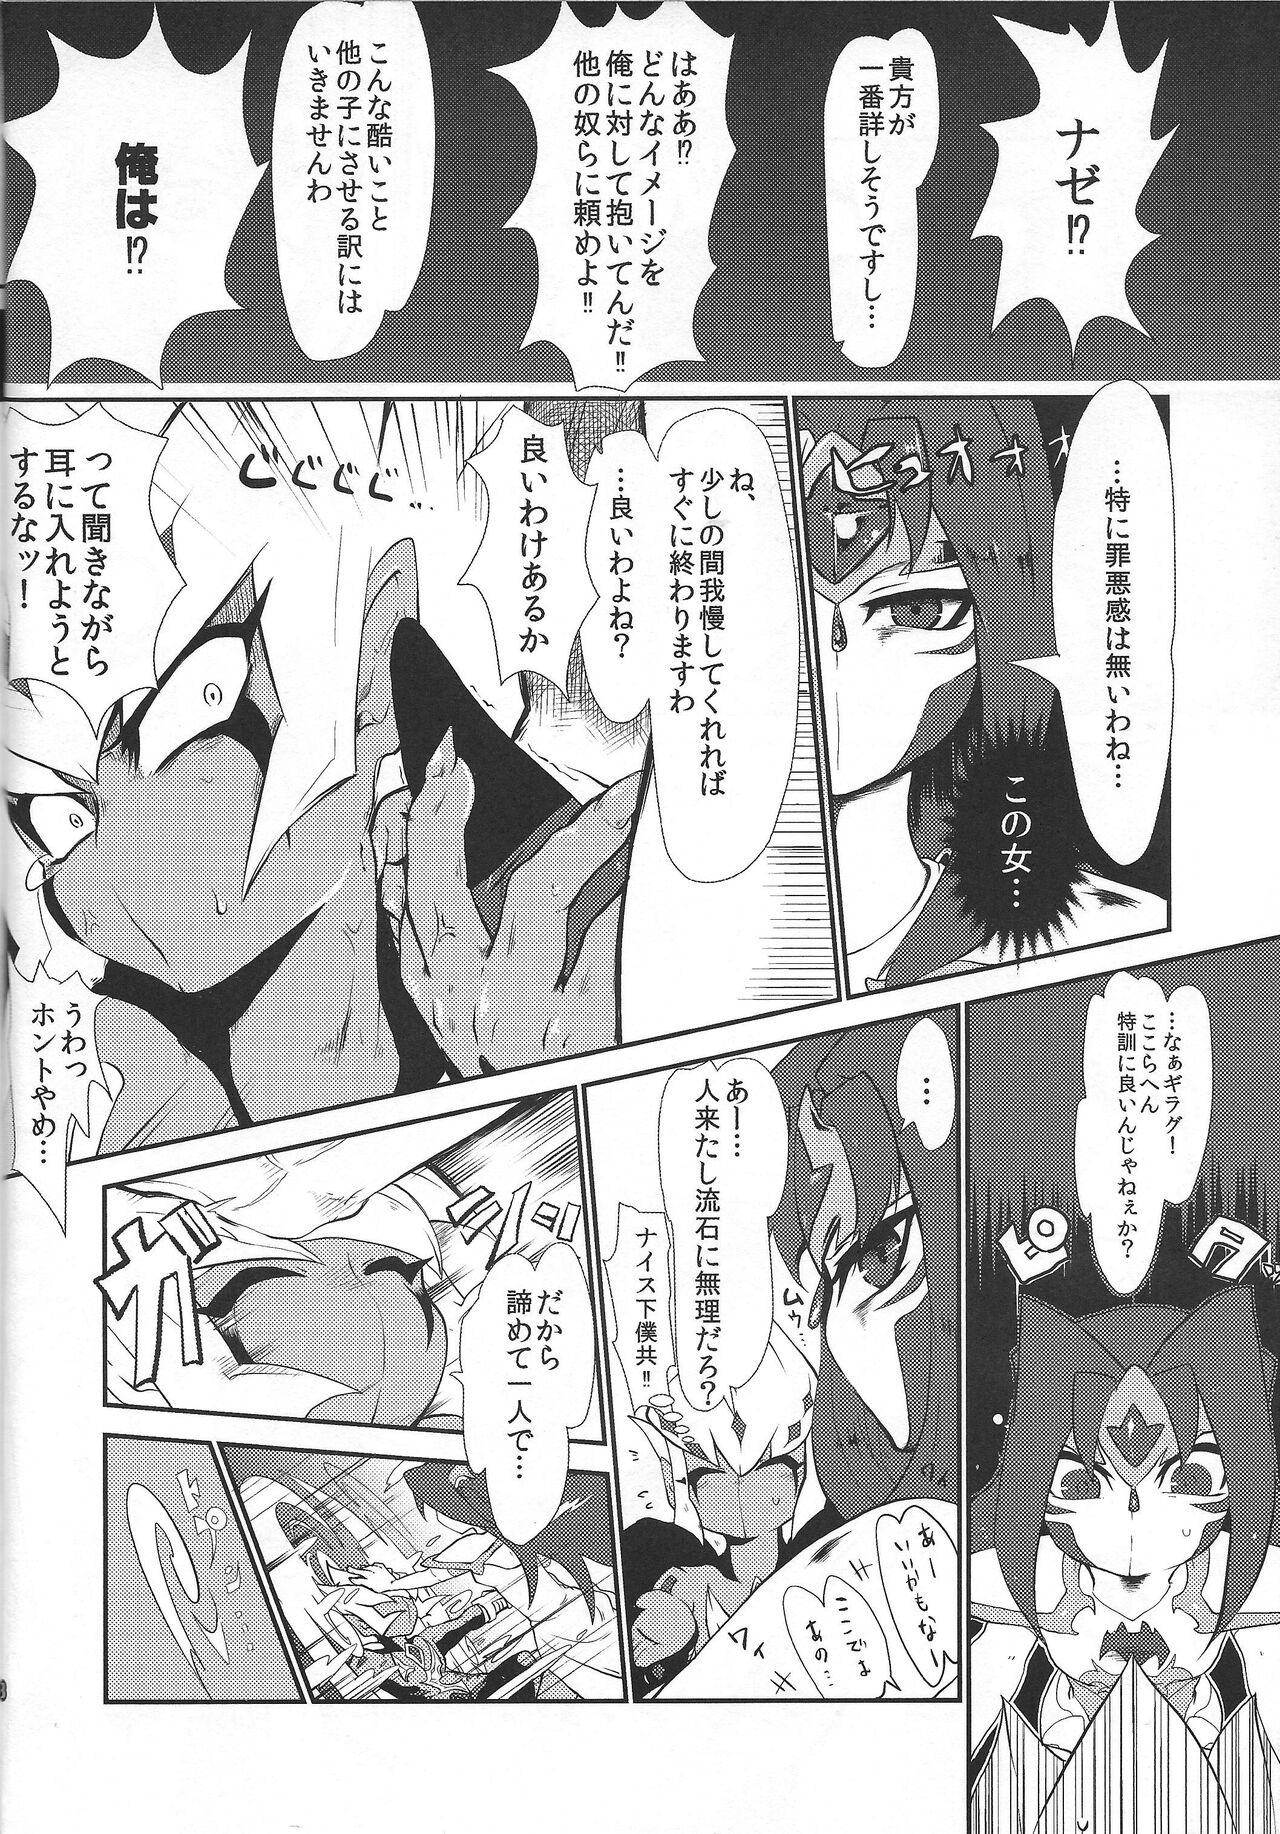 Sucks Saigo no utage ga hajimaru mae ni - Yu-gi-oh zexal Gay Handjob - Page 7